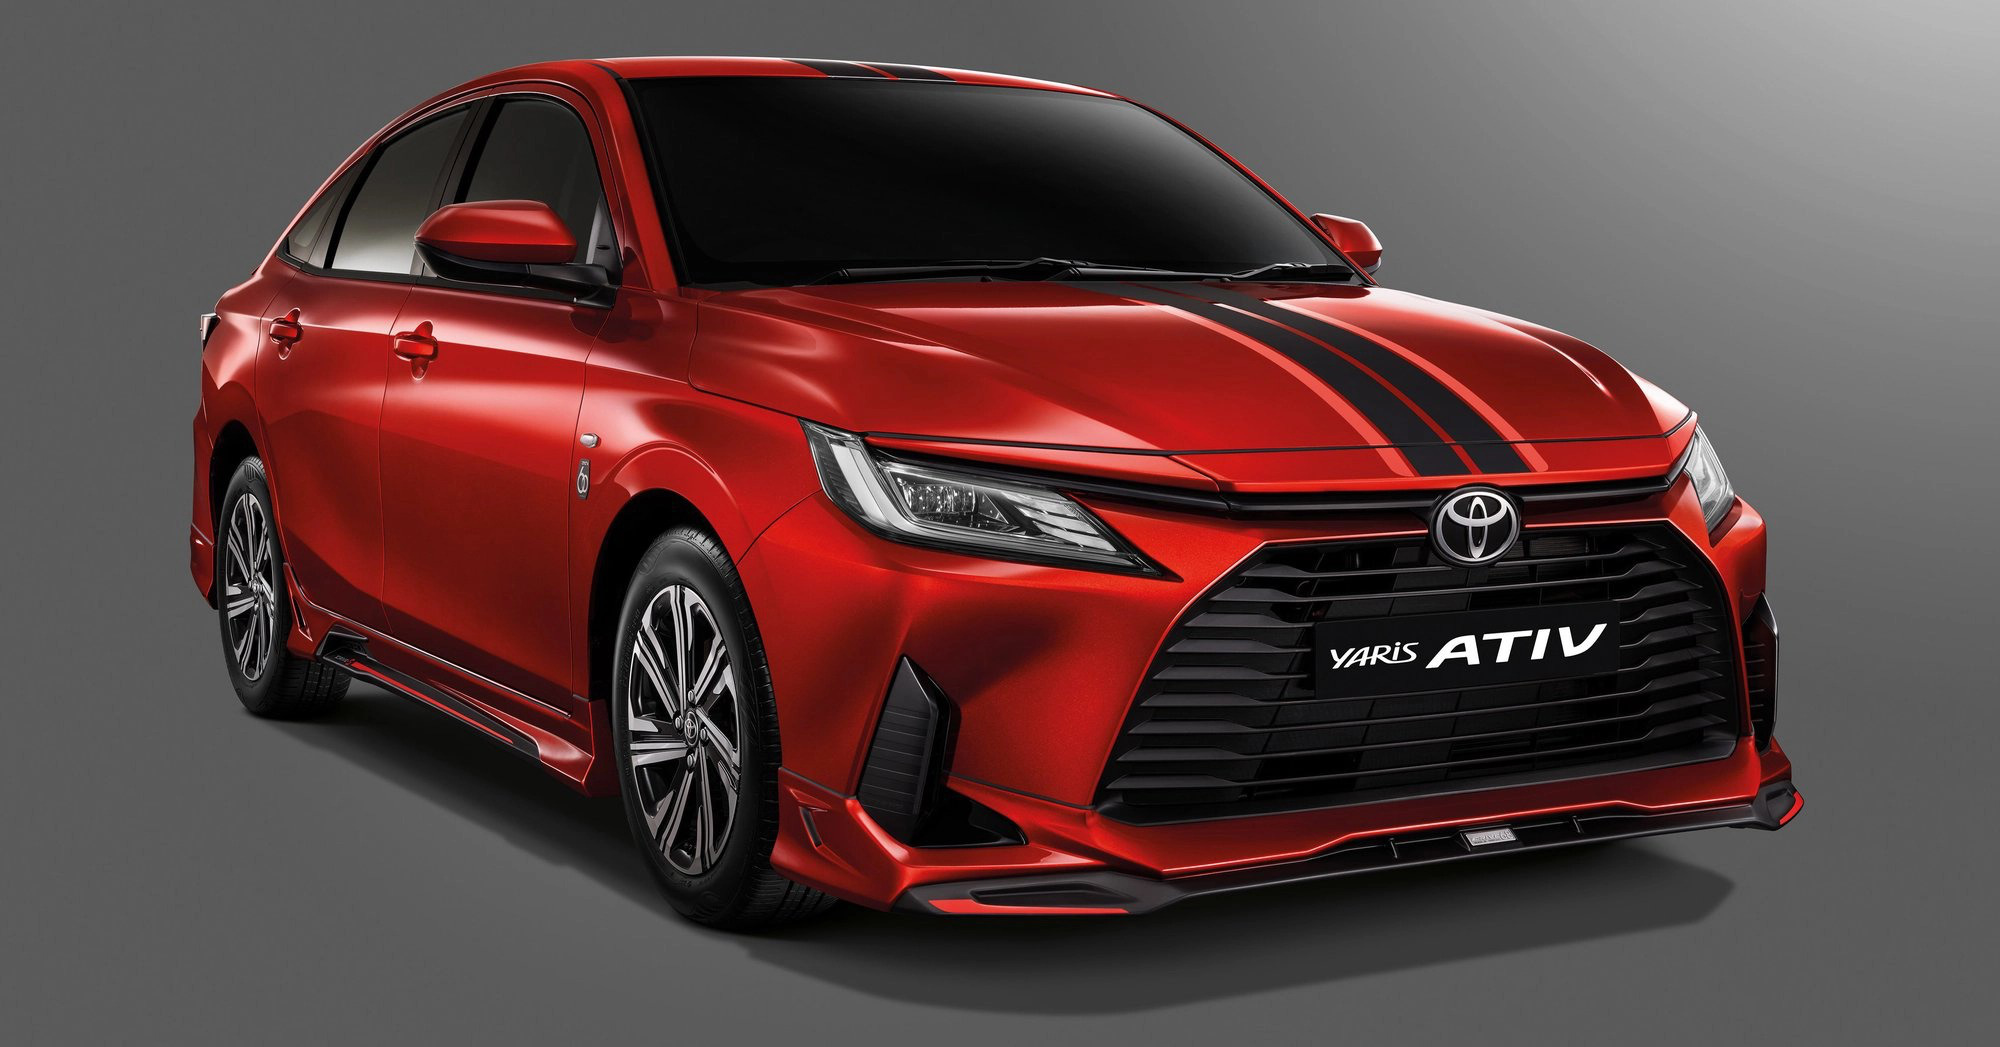 Toyota Yaris mới có thể ra mắt tháng 3: Nịnh mắt chị em bằng thay đổi nhỏ - Ảnh 2.